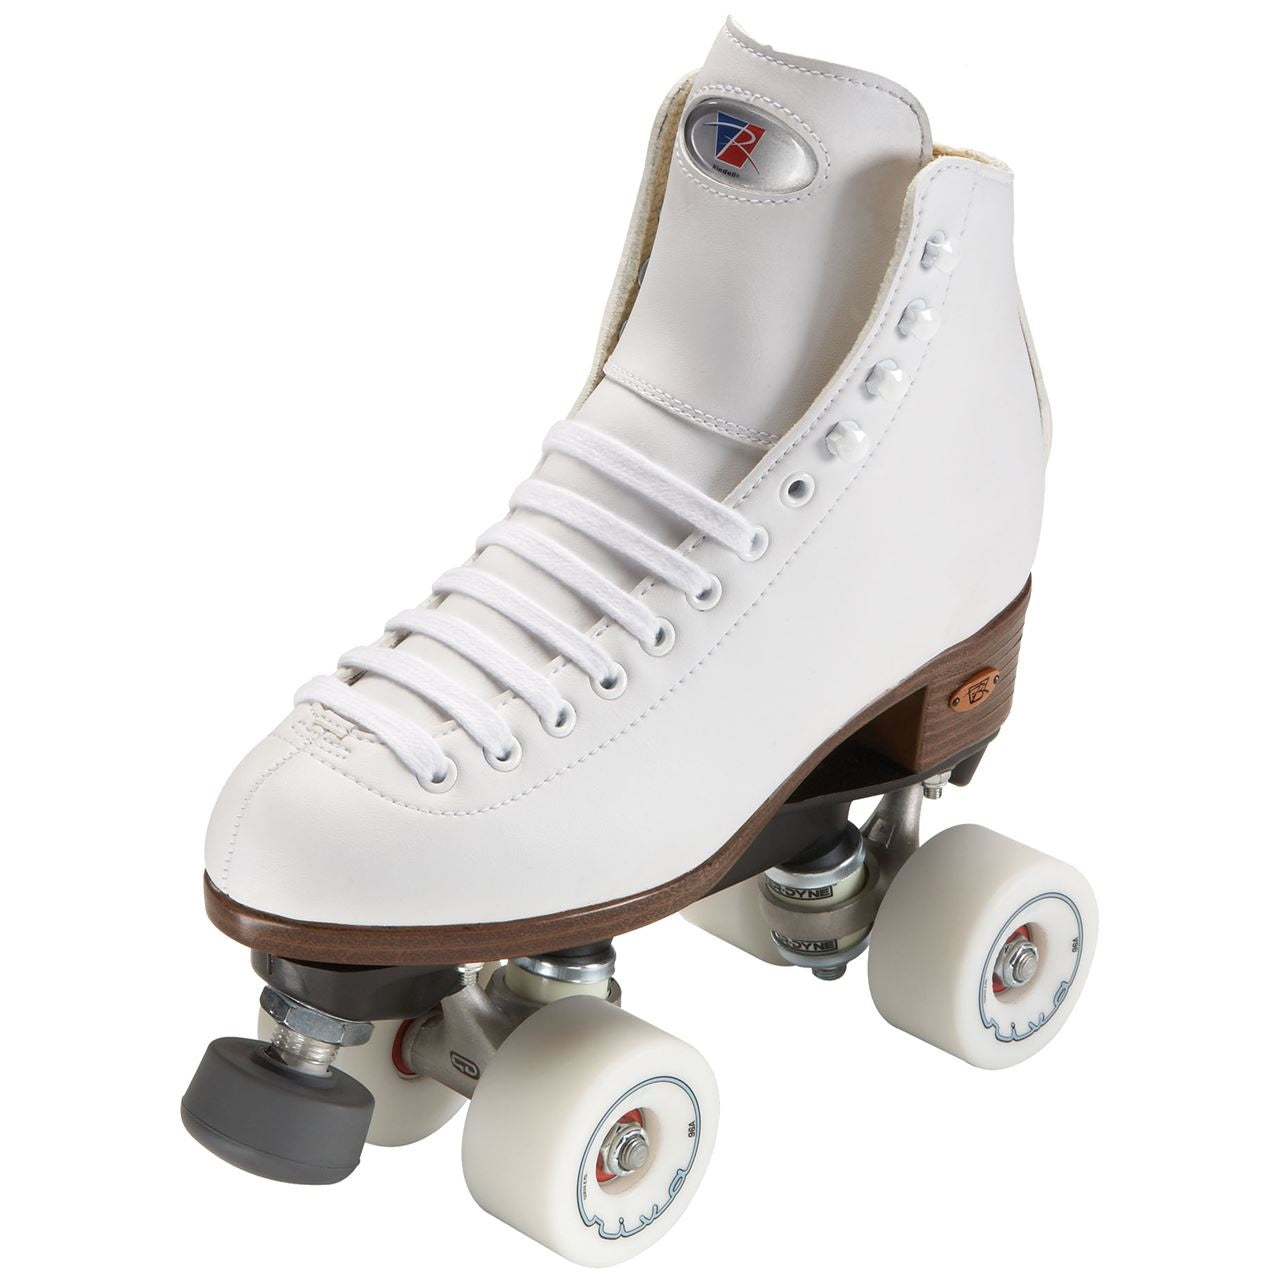 Riedell 111 Angel Roller Skates White - Medium Width